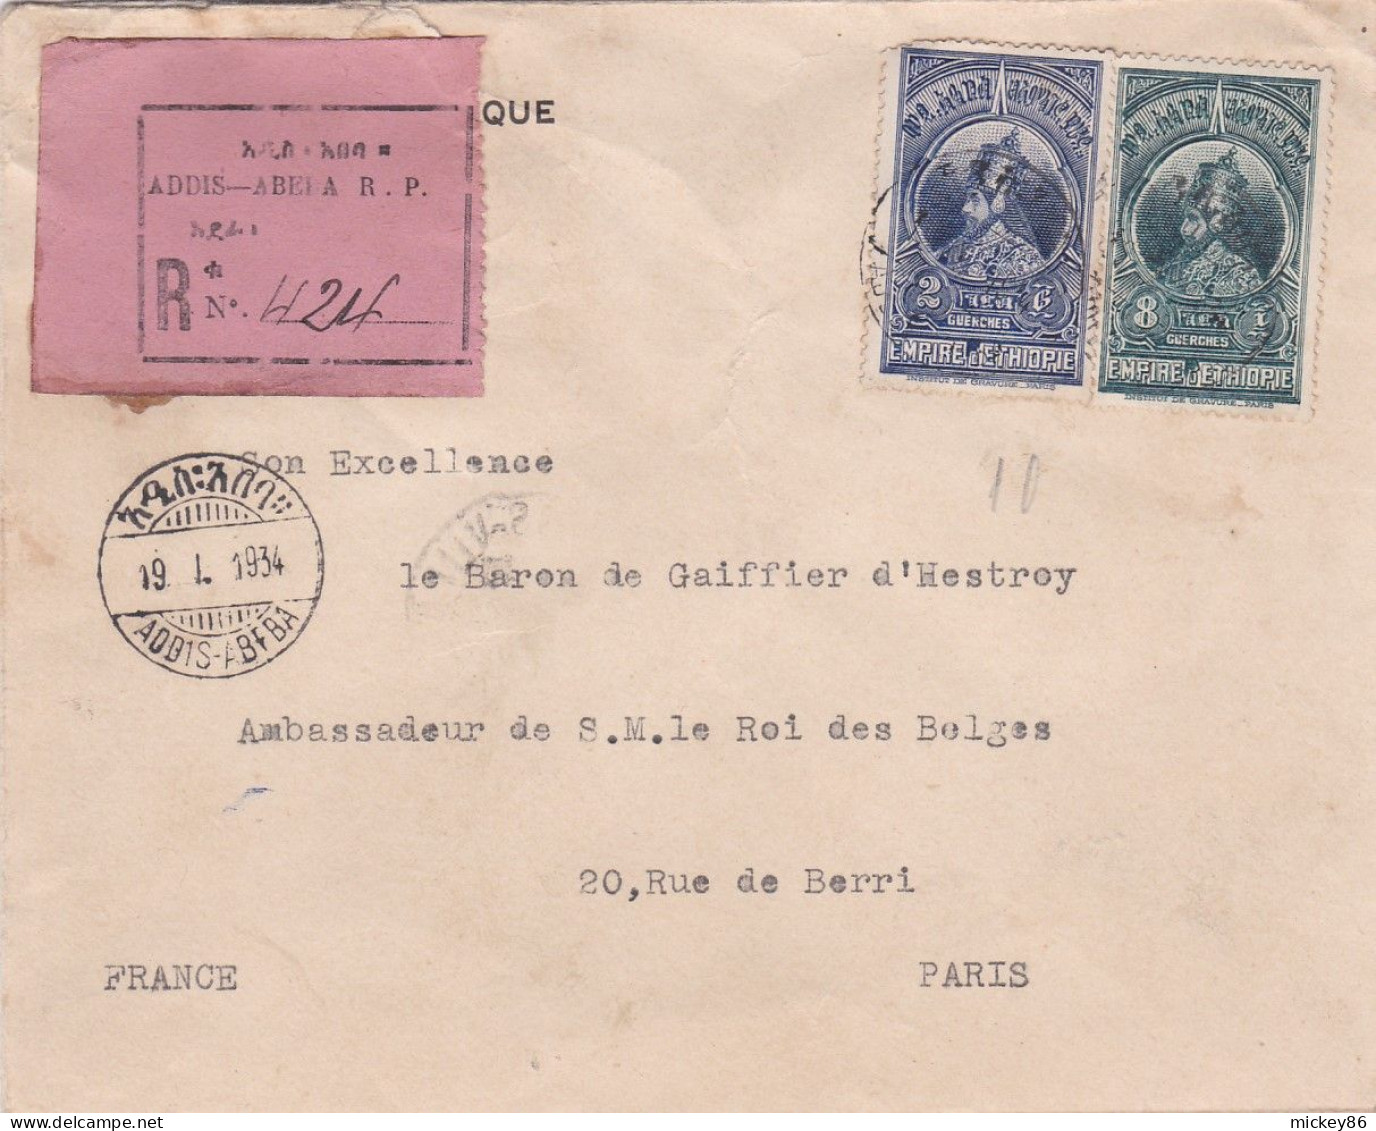 ETHIOPIE -1934 - Lettre Recommandée ADDIS-ABEBA  Pour PARIS (France )..beaux Timbres  Sur Lettre , Cachets - Äthiopien